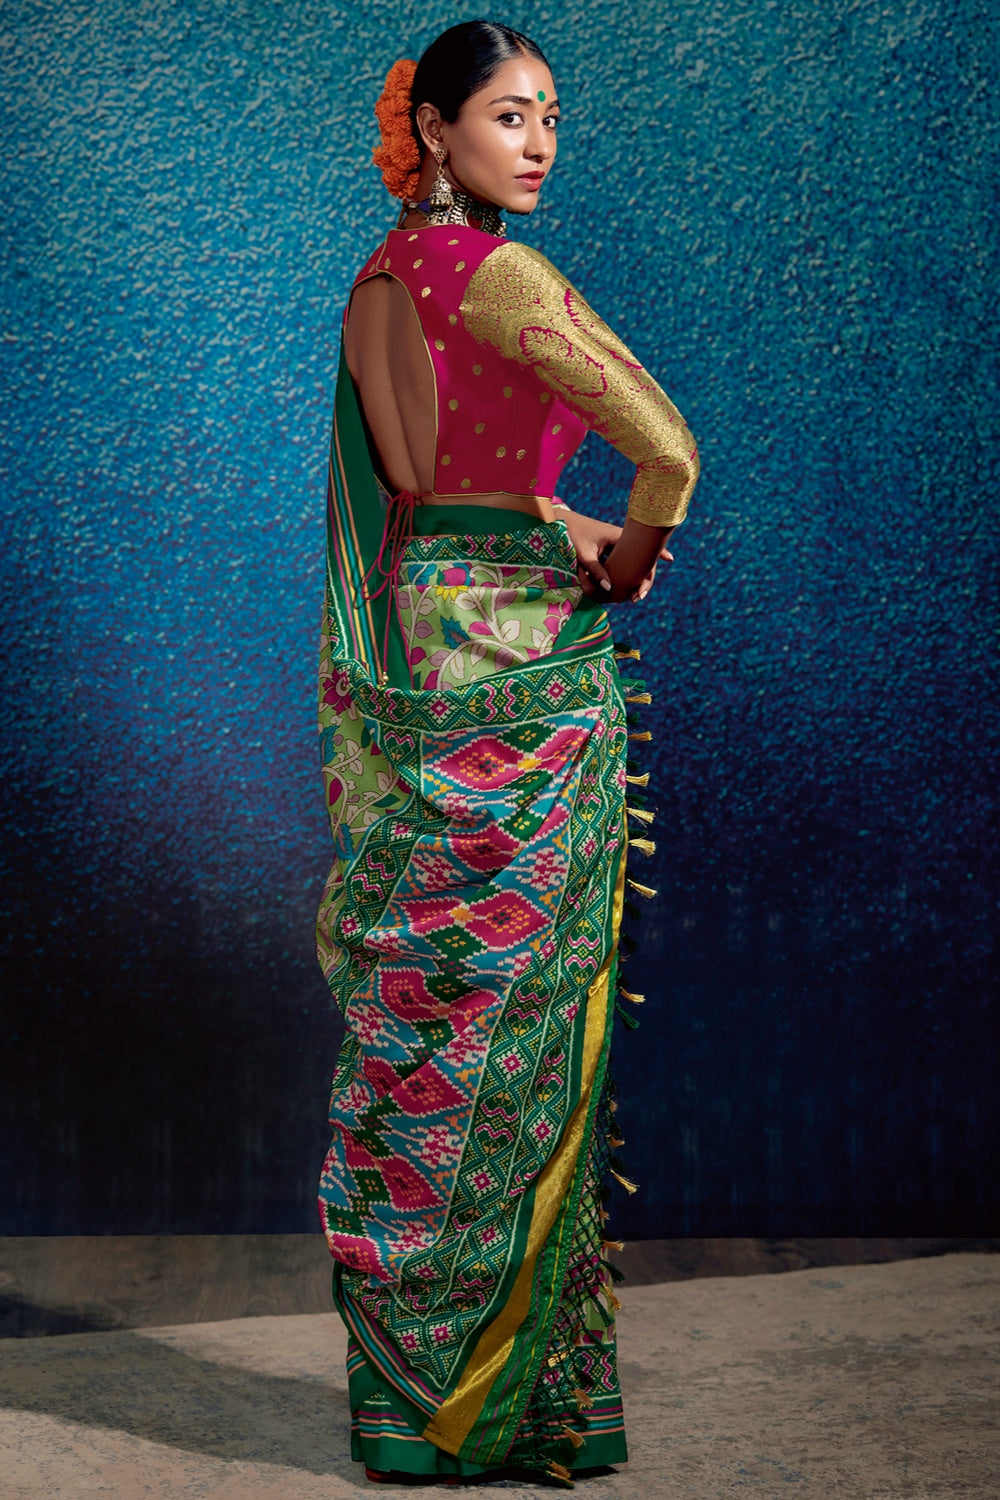 Light Green Tussar Silk With Kalamkari Printed Saree